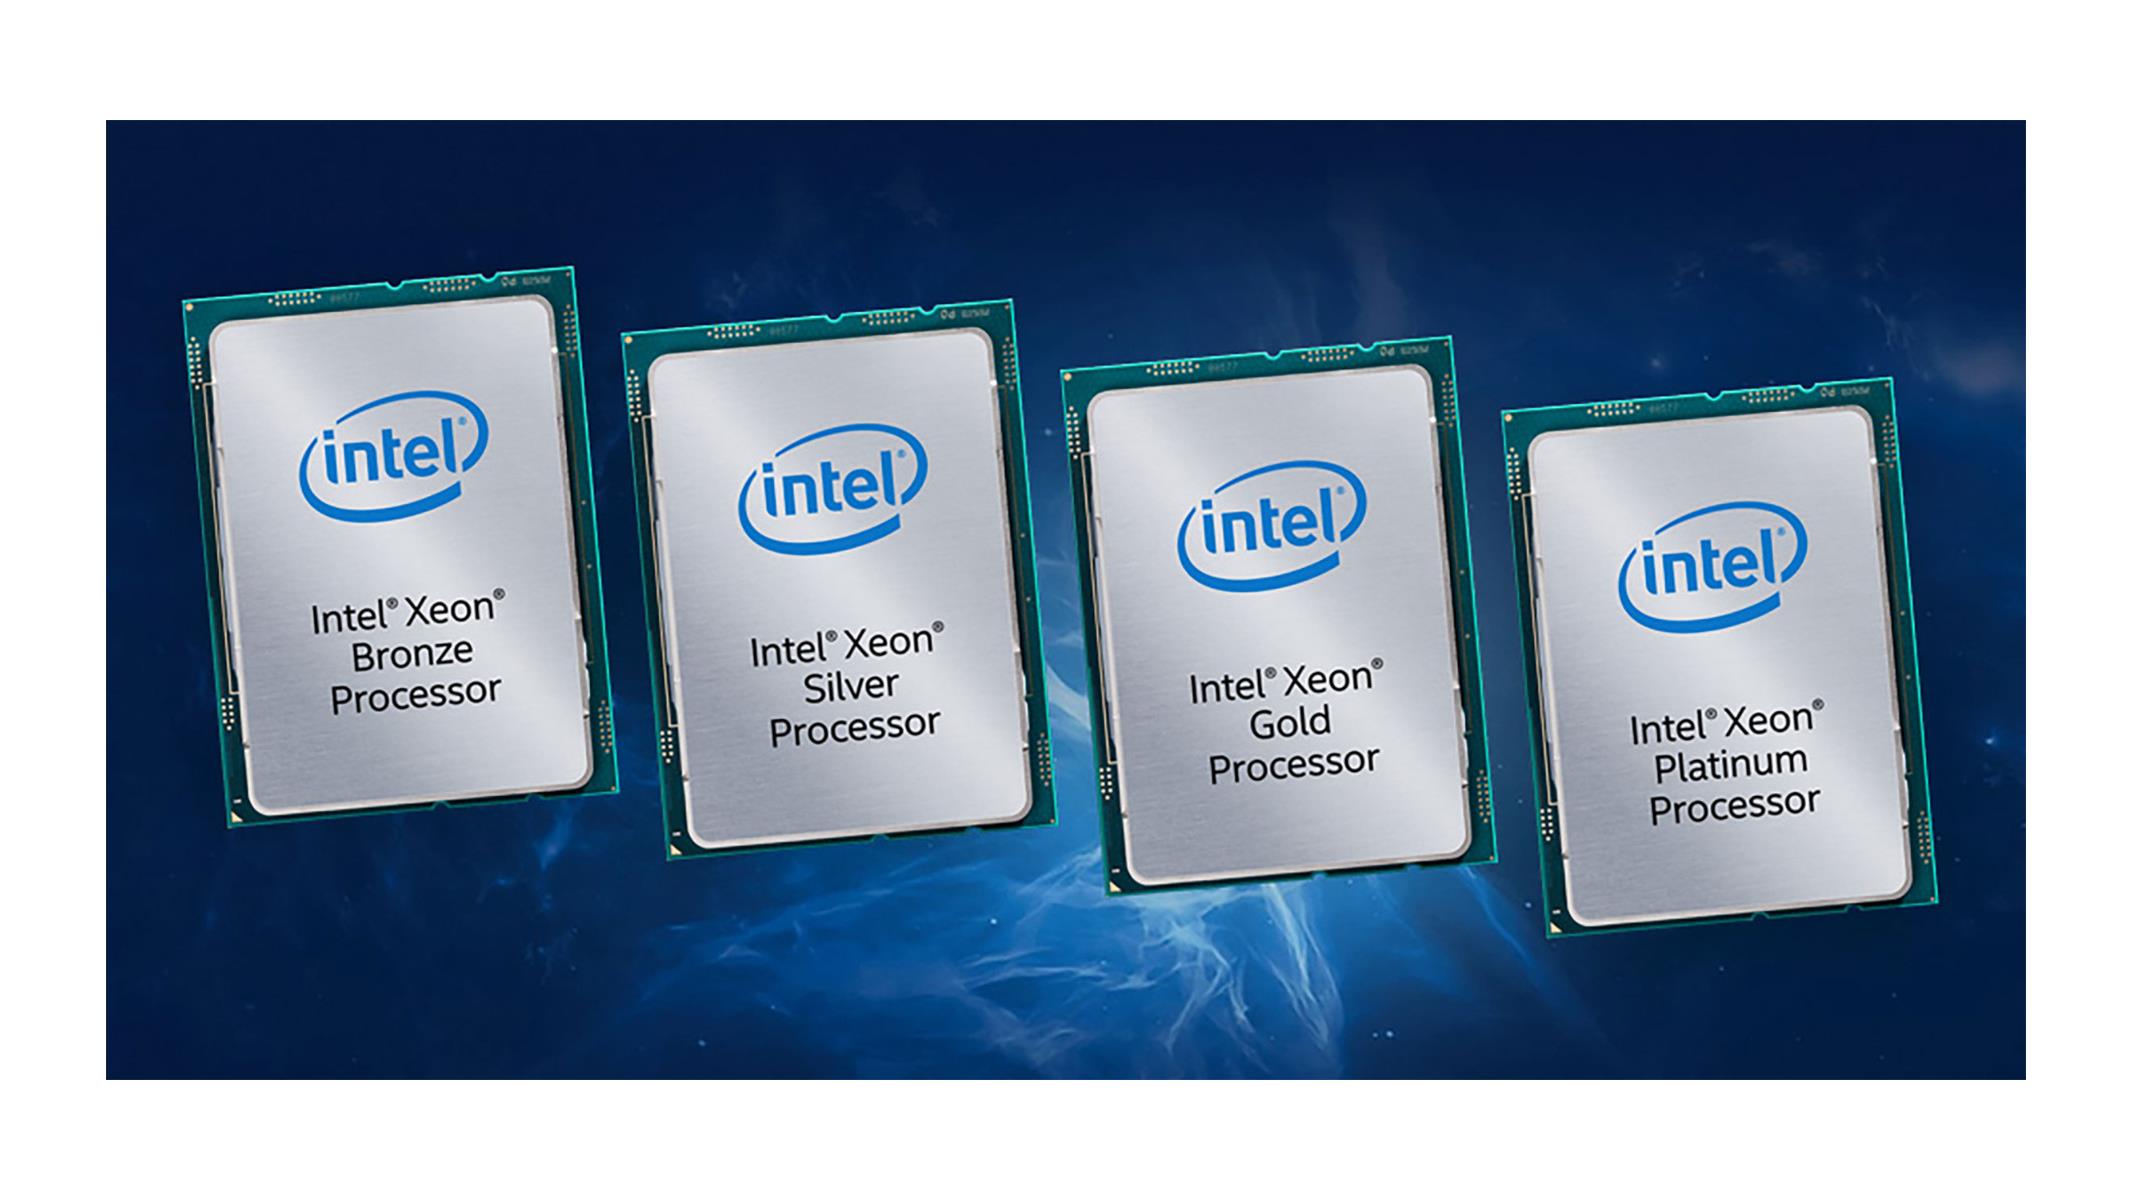 Процессор intel xeon gold. Intel Xeon 32 Core. Процессор Intel Xeon 1700mhz Foster. Ксеон Голд. Процессор серебро.